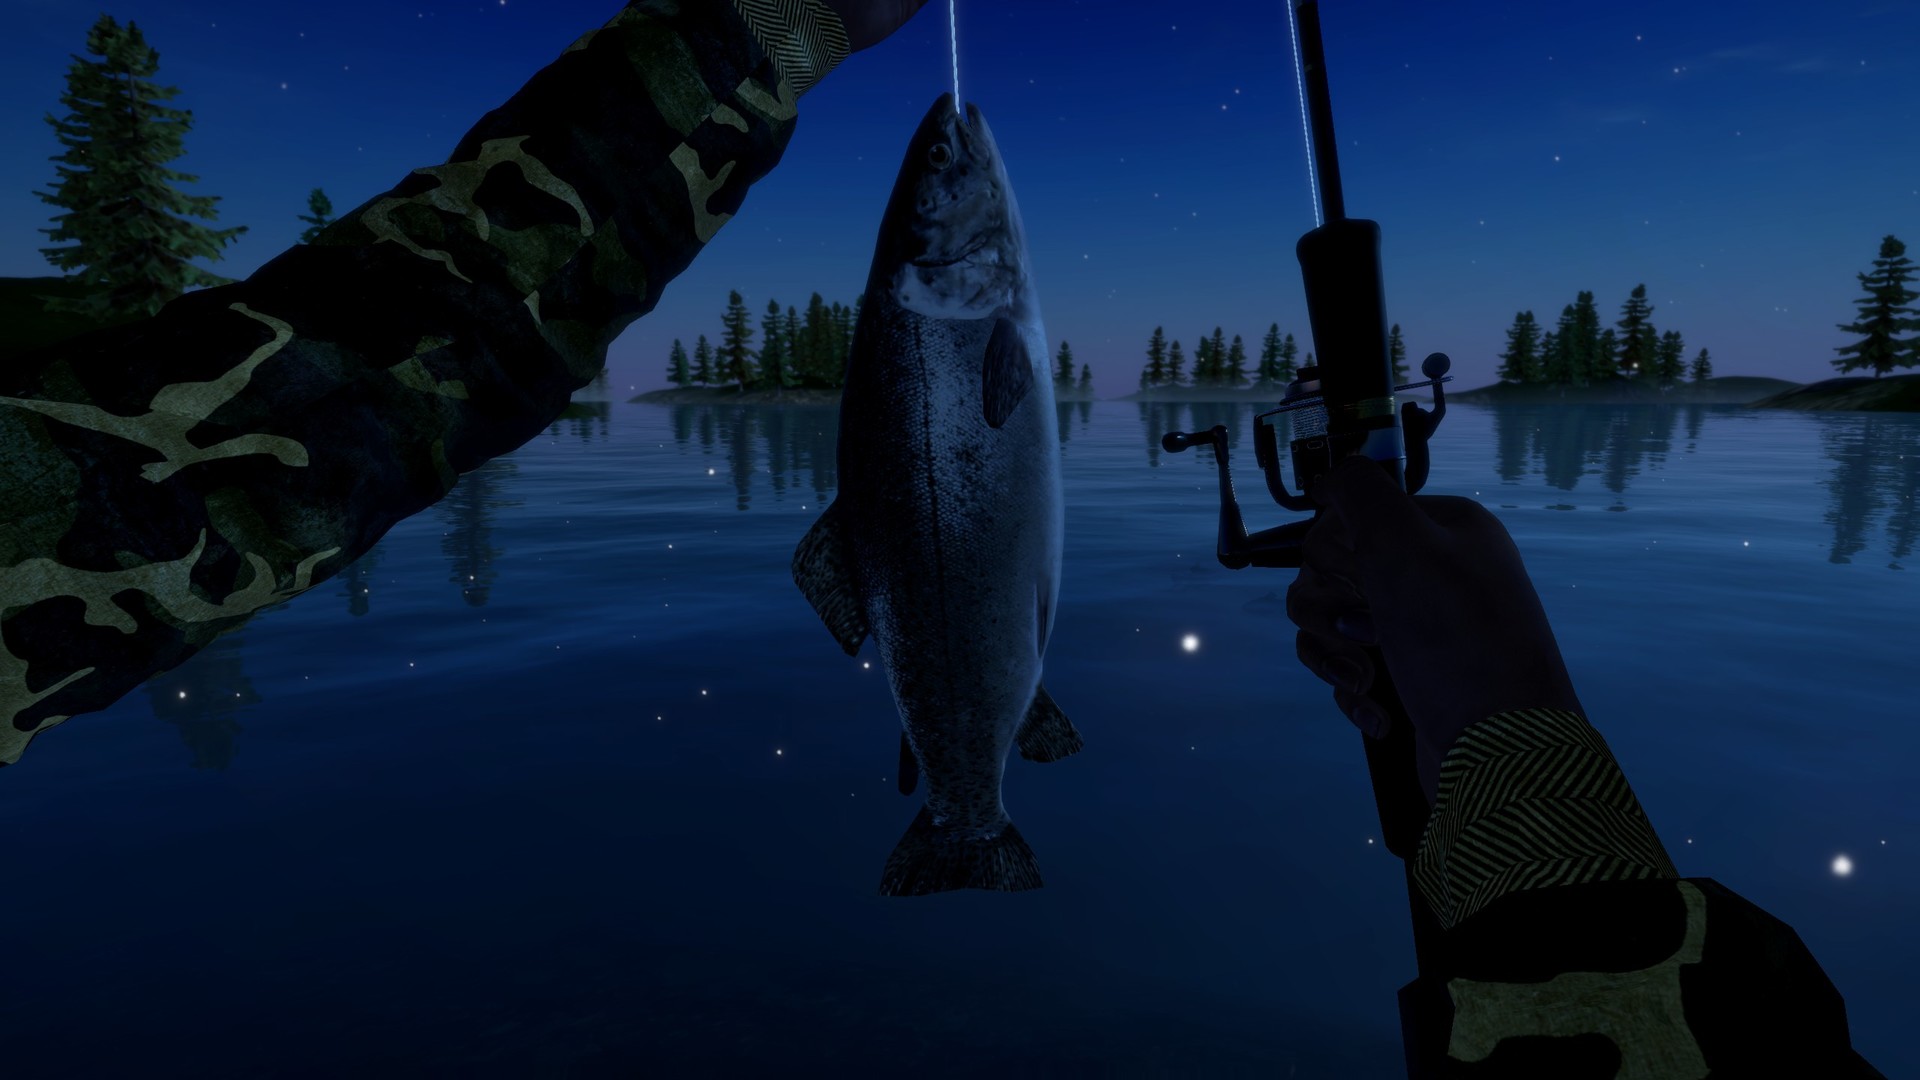 Топ игр про рыбалку